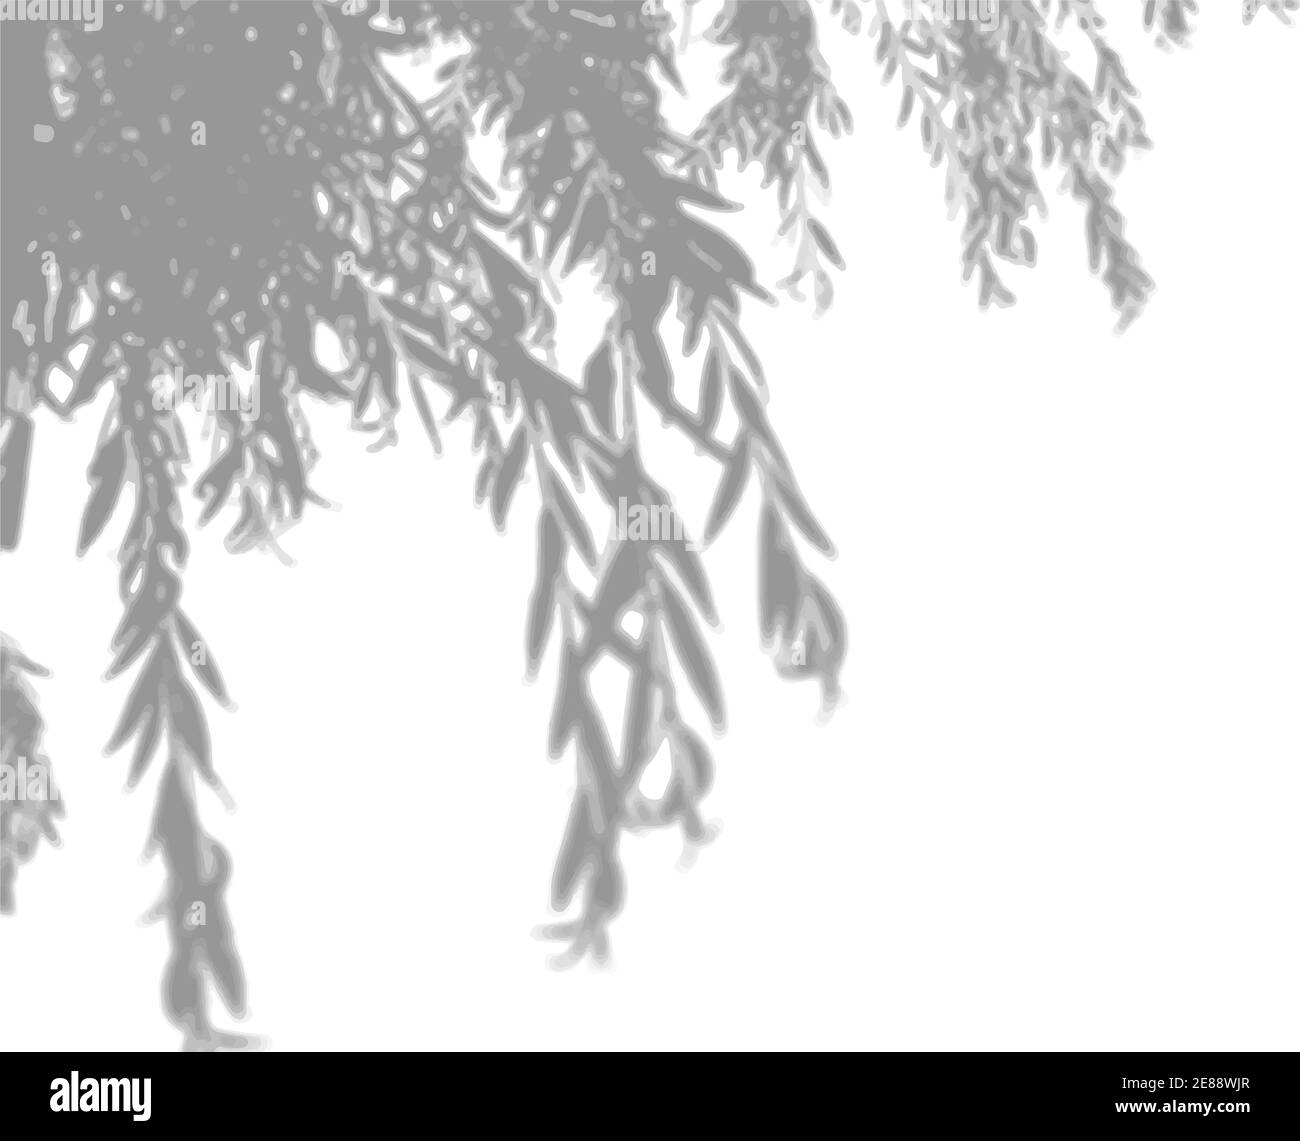 La lumière naturelle projette des ombres à partir d'un arrière-plan blanc isolé de l'oa d'une branche de saule. Effet de superposition des ombres Illustration de Vecteur